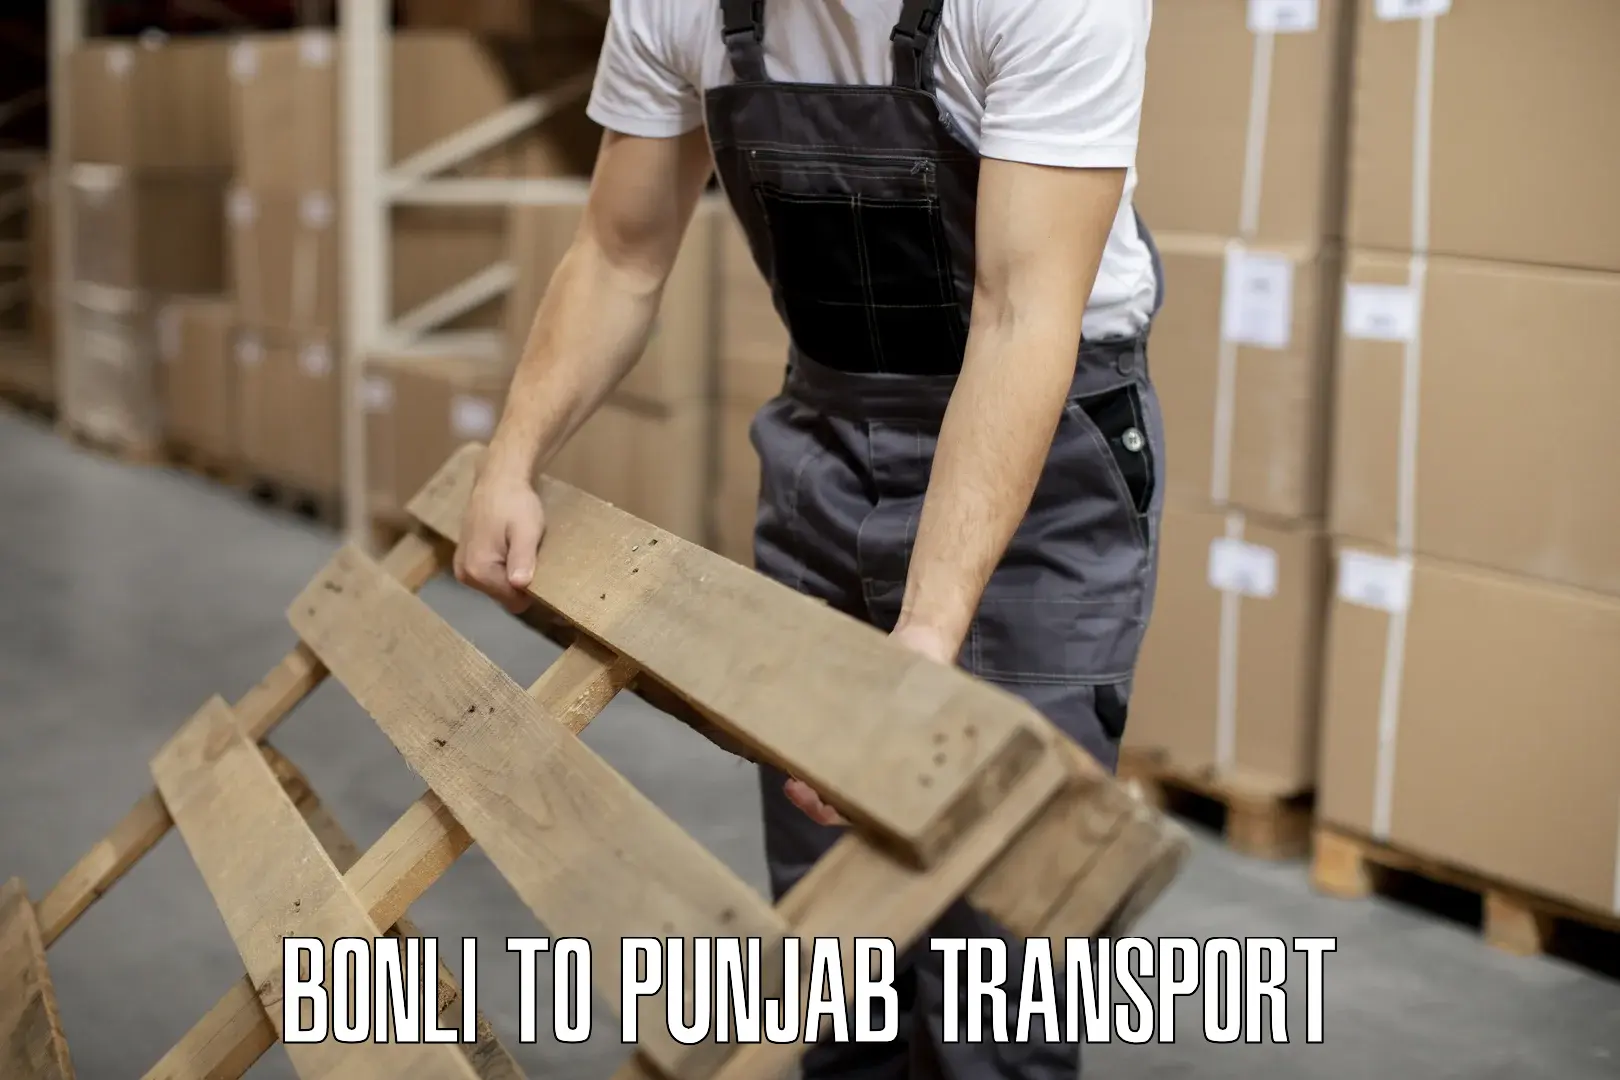 Furniture transport service Bonli to Punjab